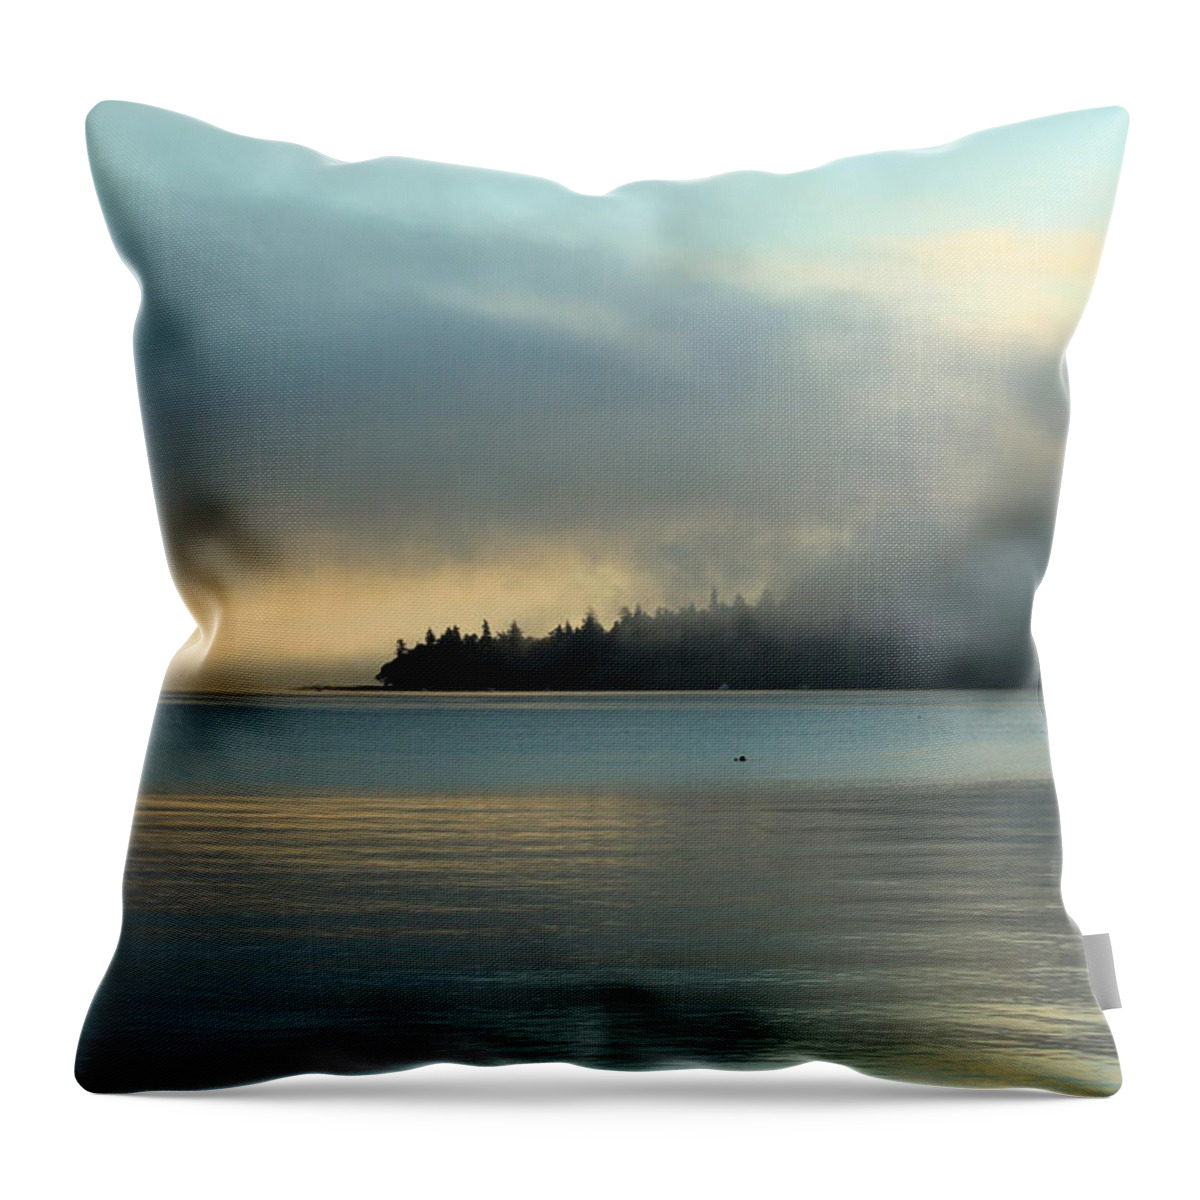 Sunrise Throw Pillow featuring the photograph An Island in Fog by E Faithe Lester